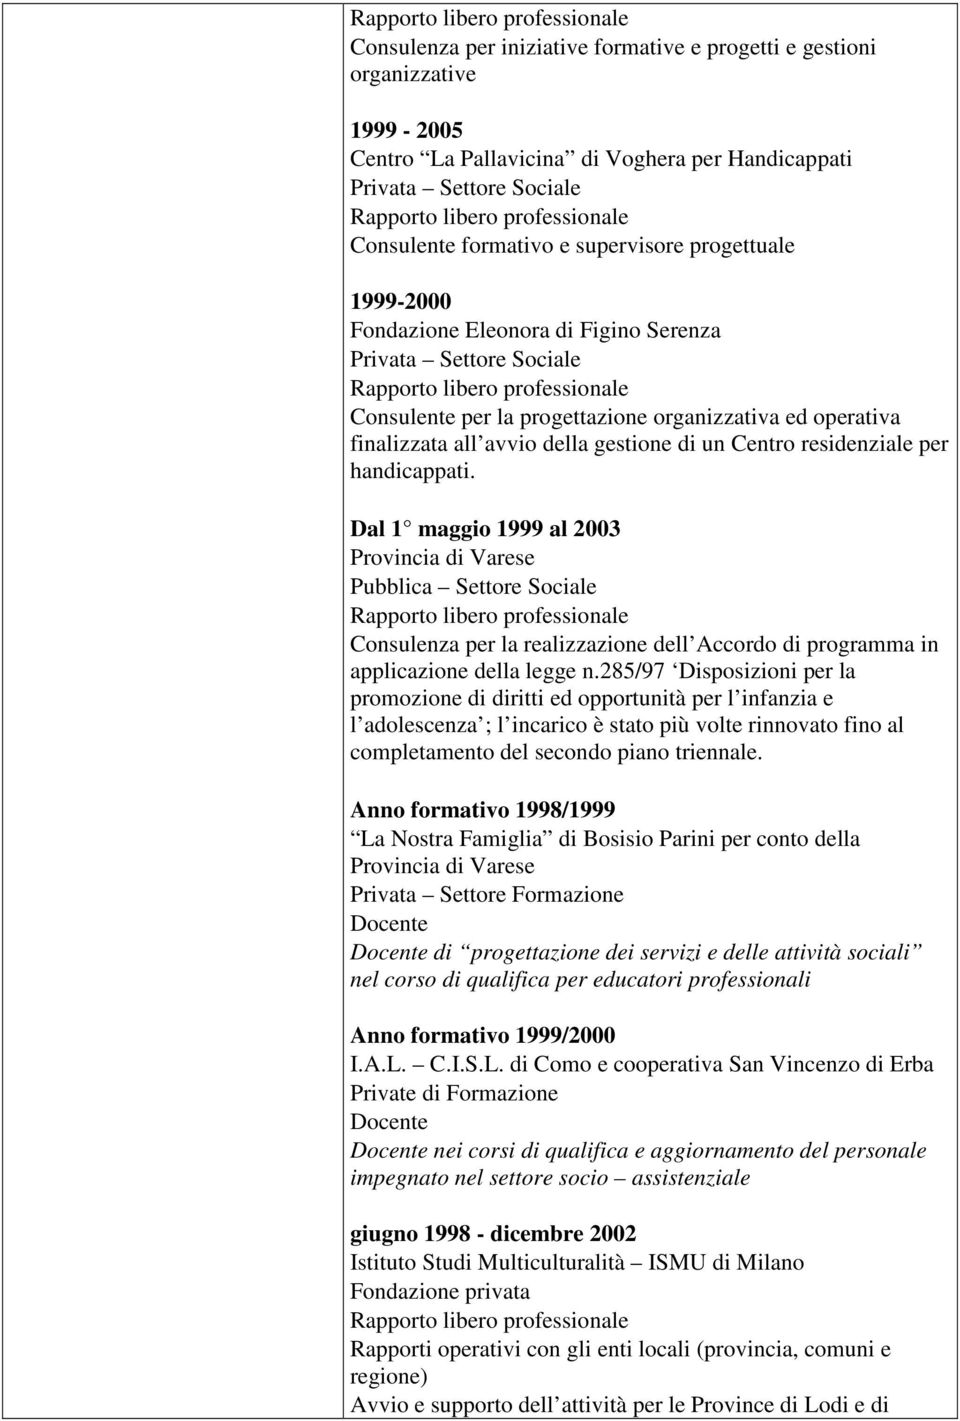 residenziale per handicappati. Dal 1 maggio 1999 al 2003 Provincia di Varese Pubblica Settore Sociale Consulenza per la realizzazione dell Accordo di programma in applicazione della legge n.